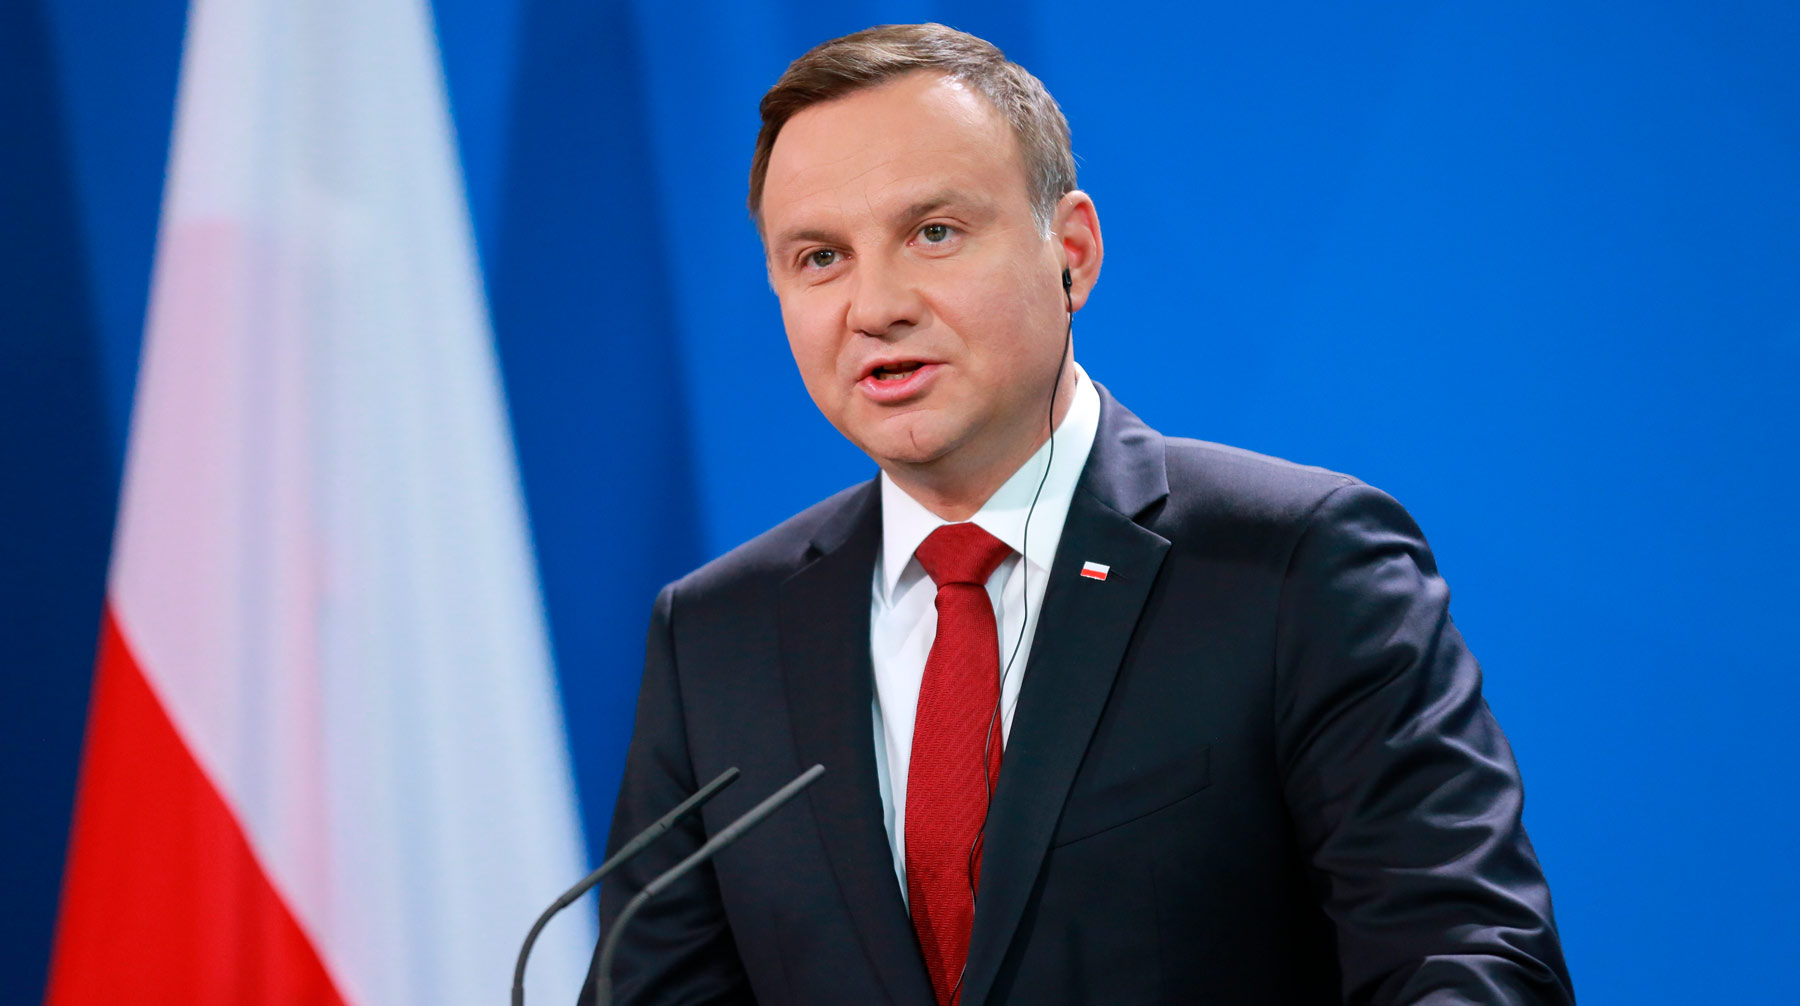 Ответом на угрозу должно стать укрепление связей с Евросоюзом и НАТО Президент Польши Анджей Дуда